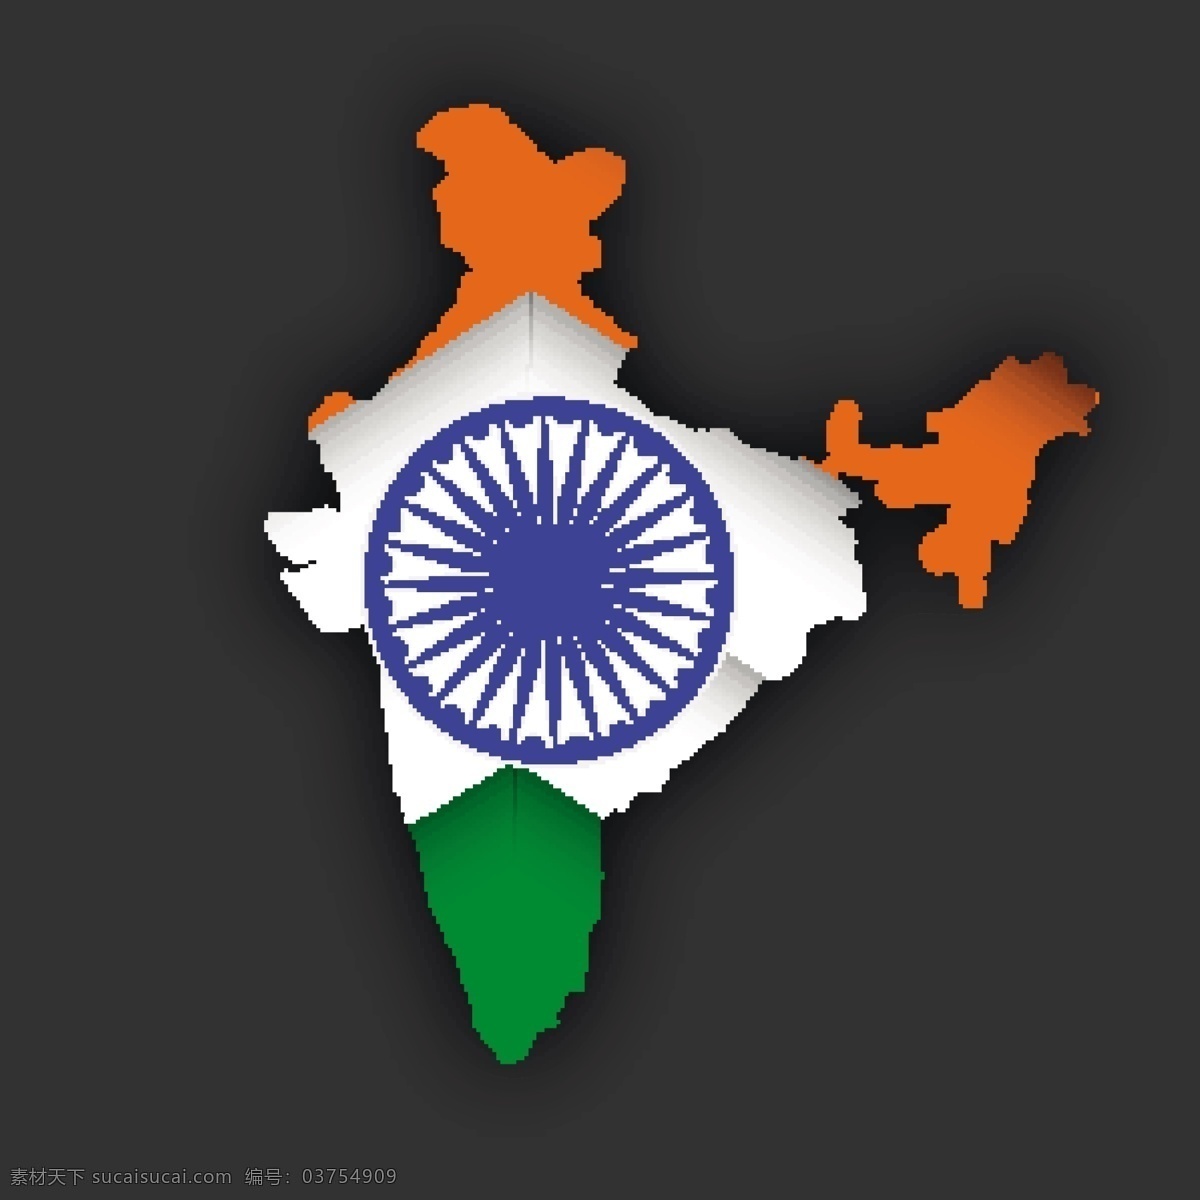 印度 国旗 地图 模板下载 印度地图 印度国旗 印度法轮 印度主题 印度元素 印度背景 底纹背景 底纹边框 矢量素材 灰色